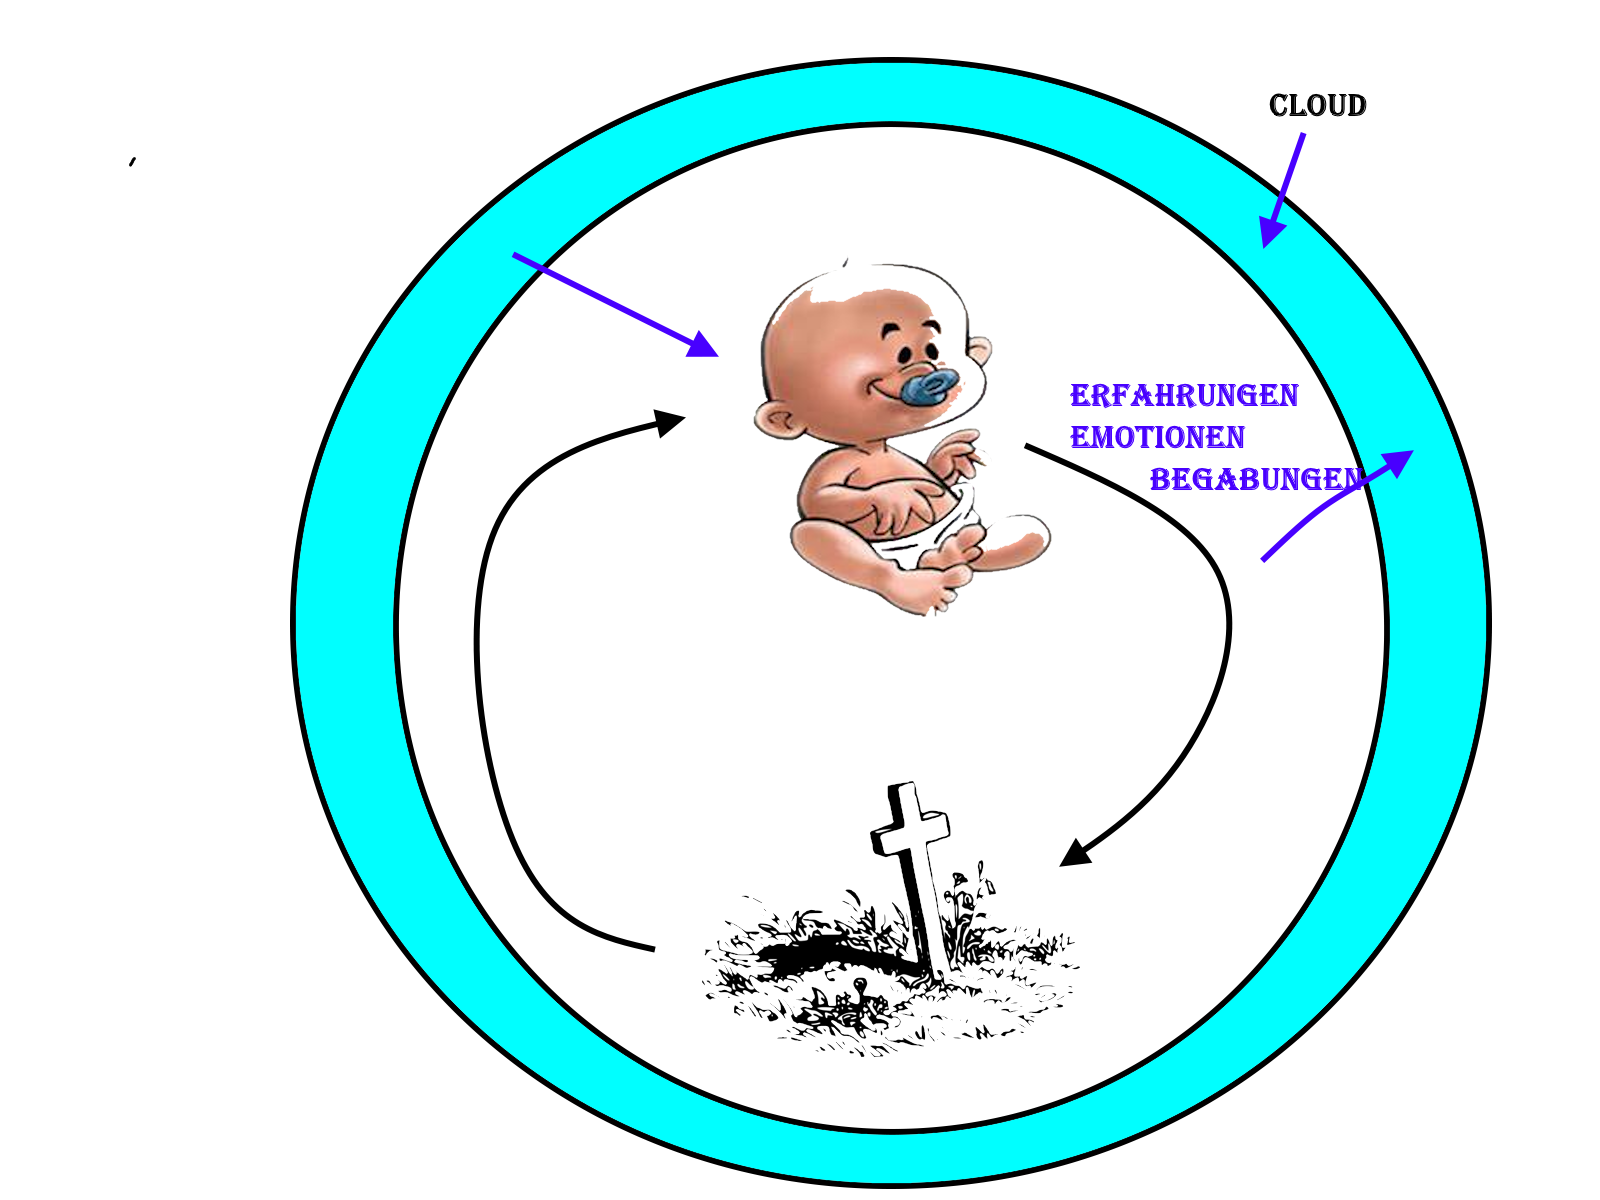 Geburt Grab im Kreislauf, darum eine Cloud, die die Erfahrungen, Emotionen und Begabungen aufnimmt